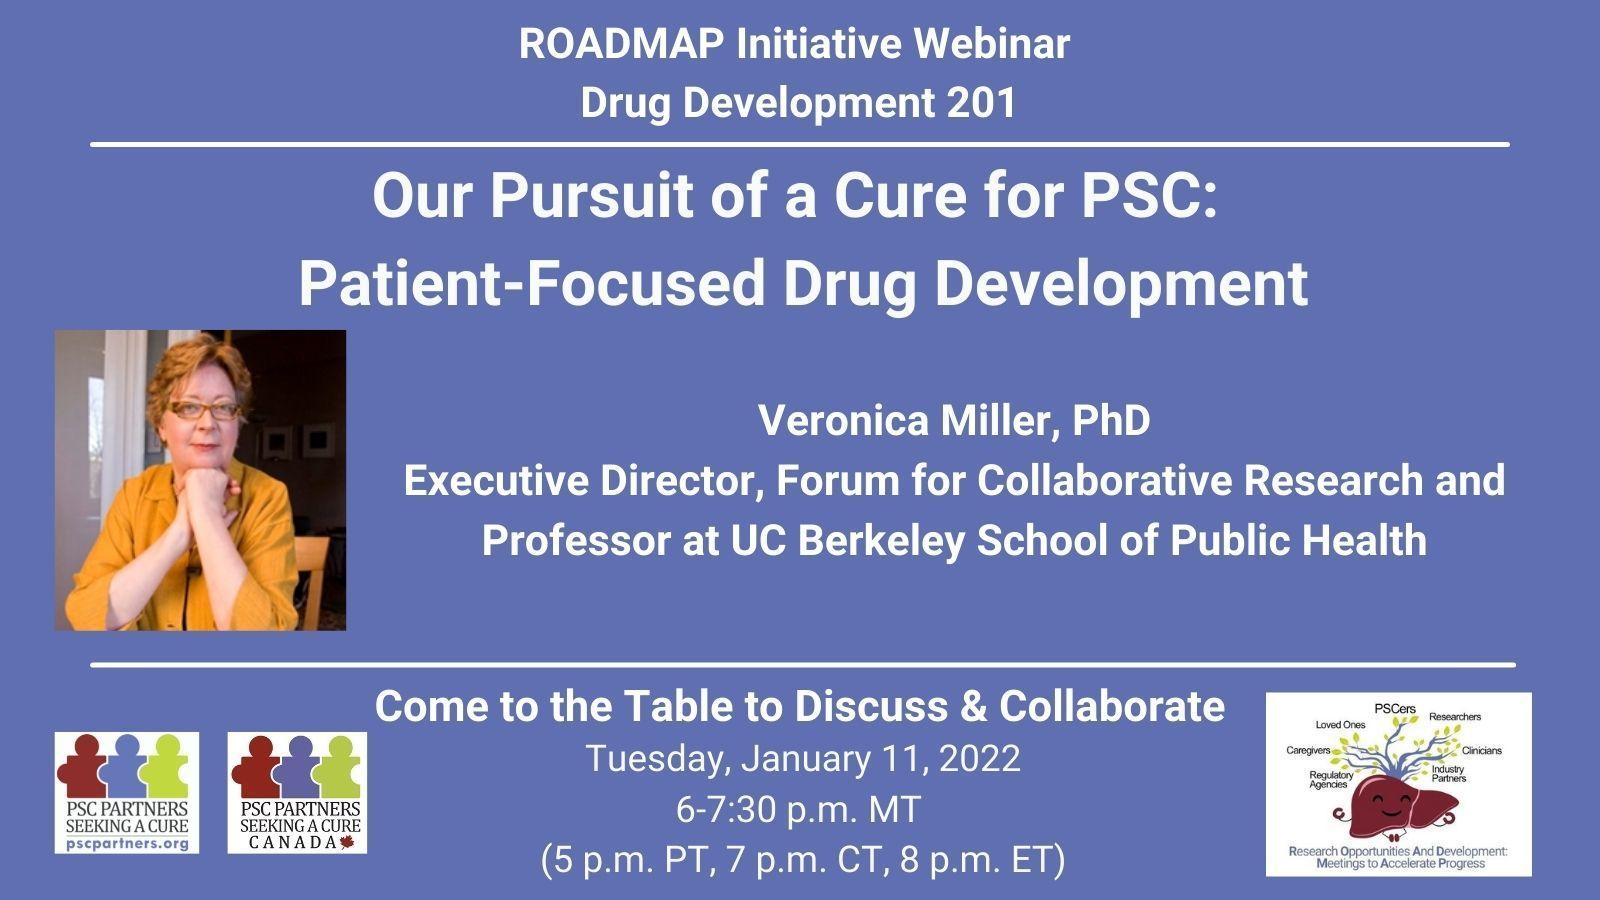 ROADMAP Drug Development 201 - Our Pursuit of a Cure for PSC: Patient-Focused Drug Development